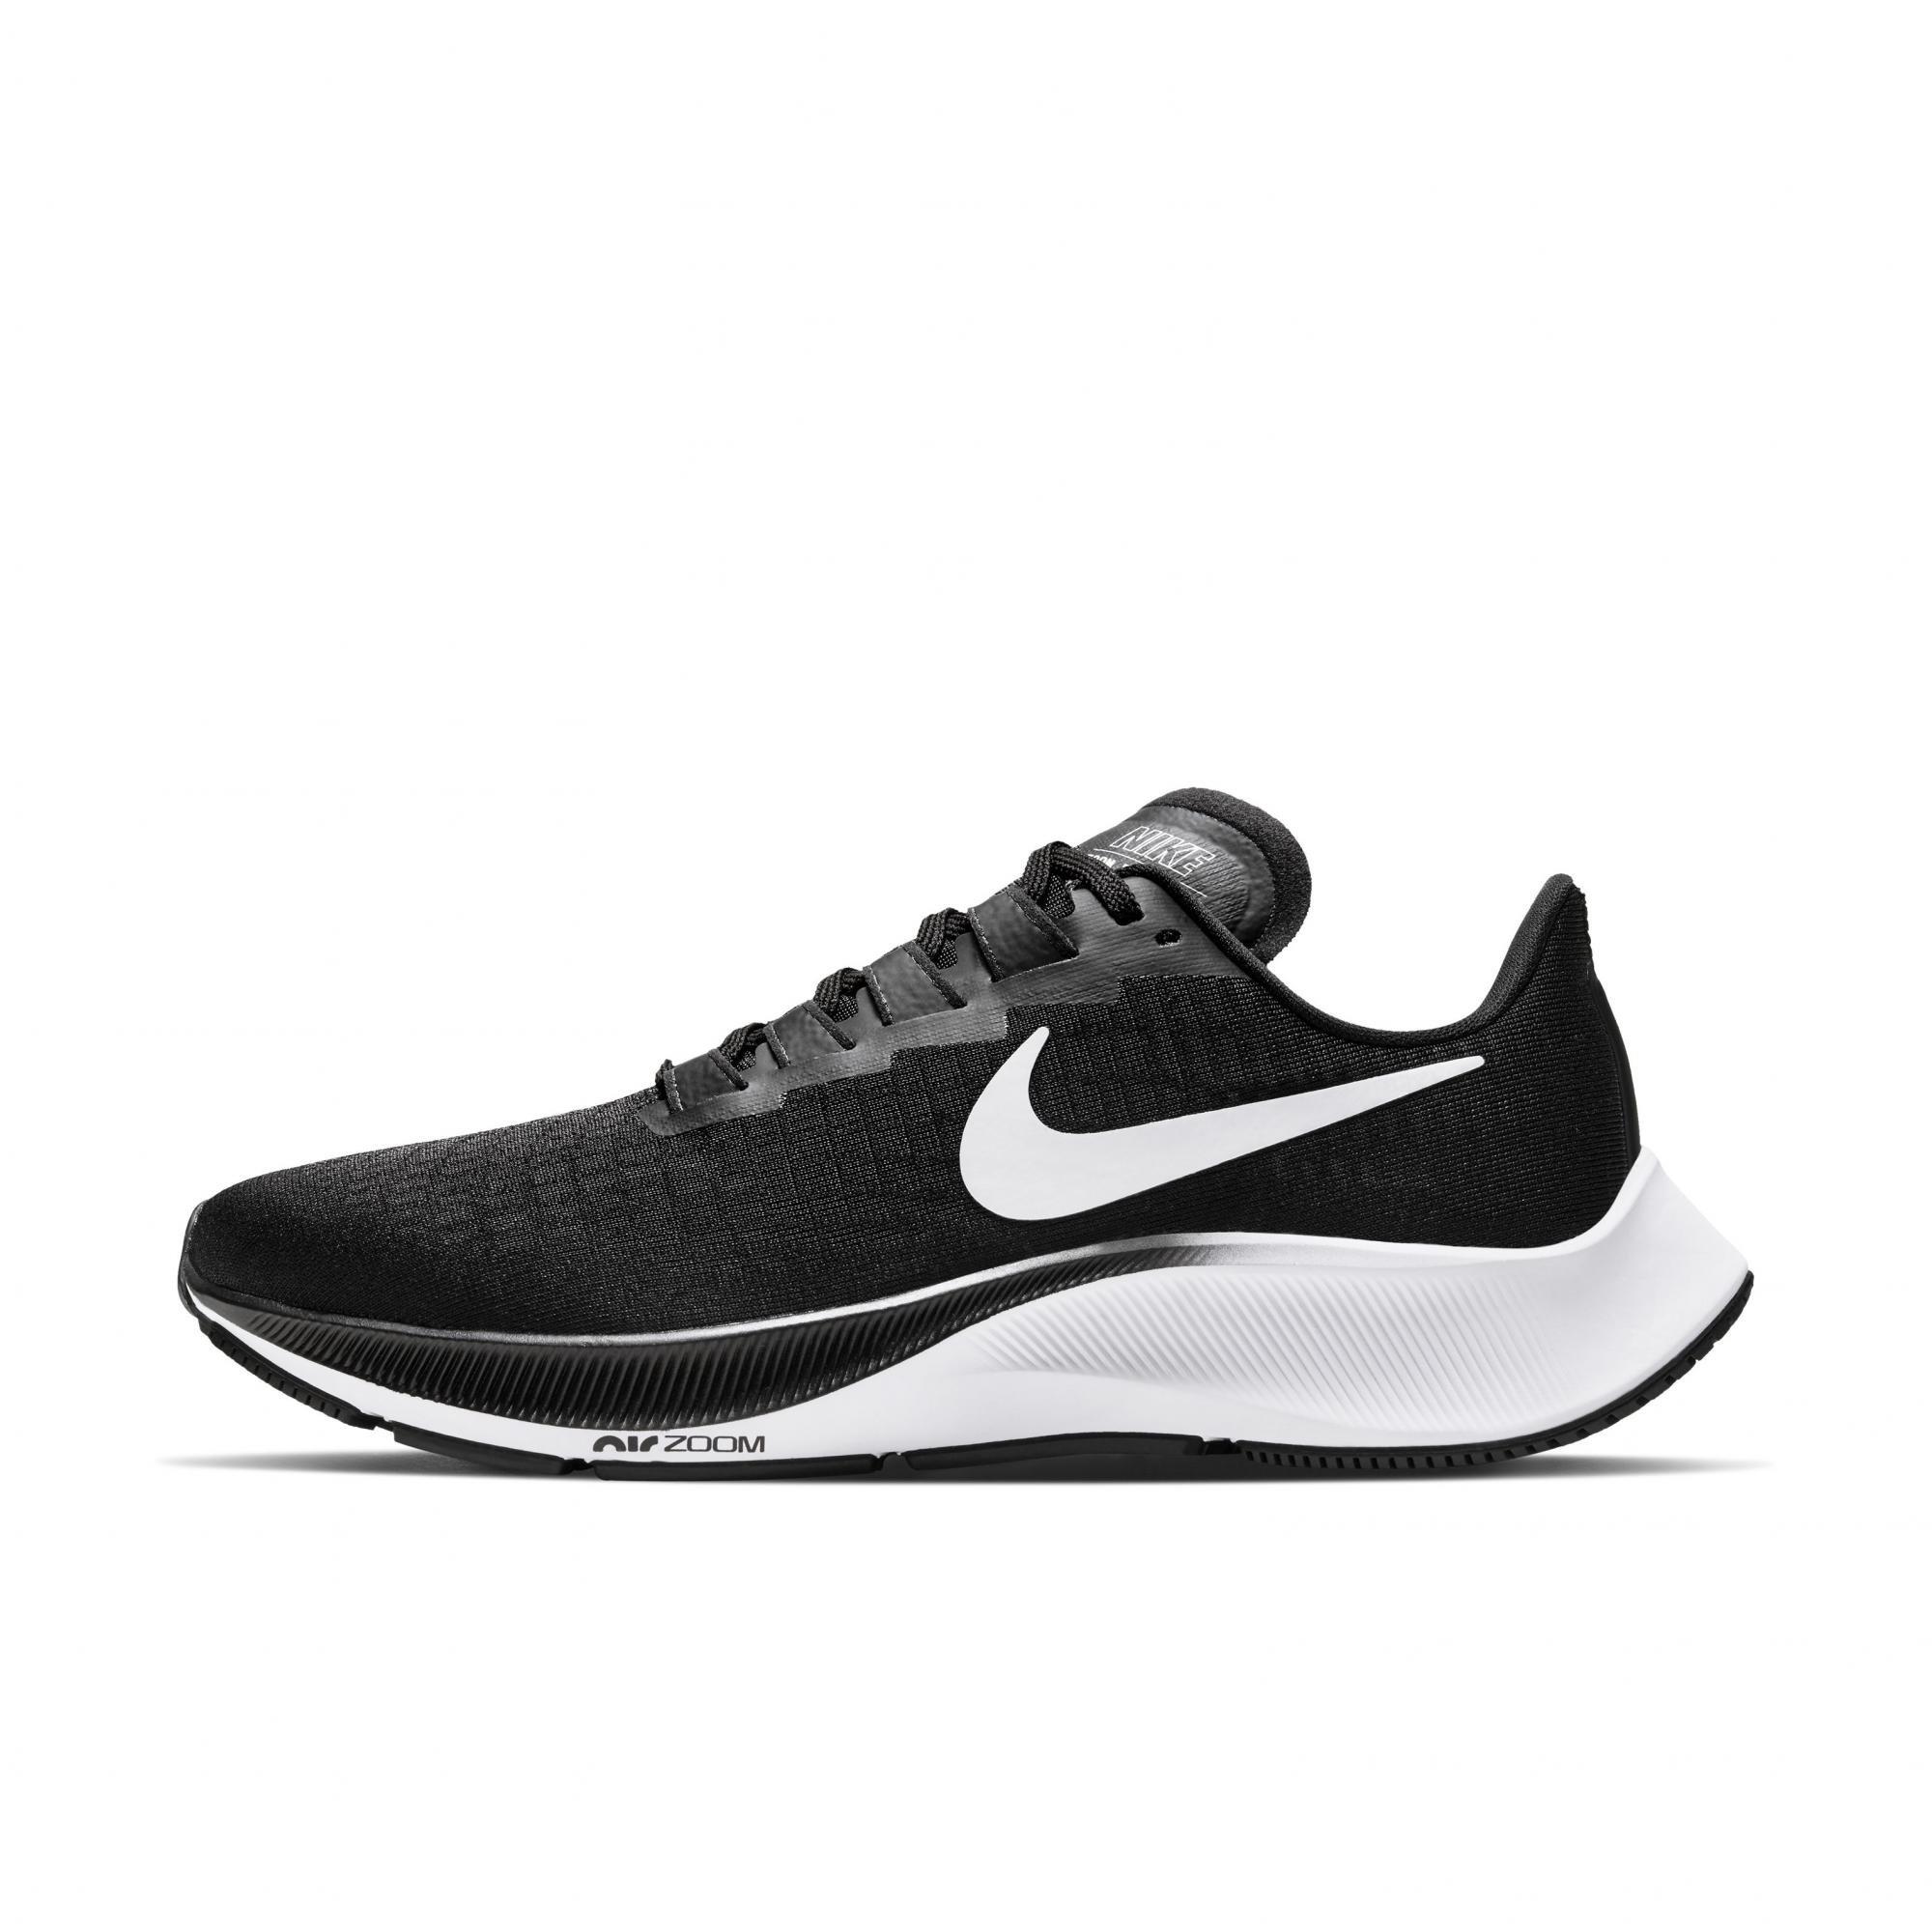 Nike Air Zoom Pegasus "Black/White" Women's Running Shoe